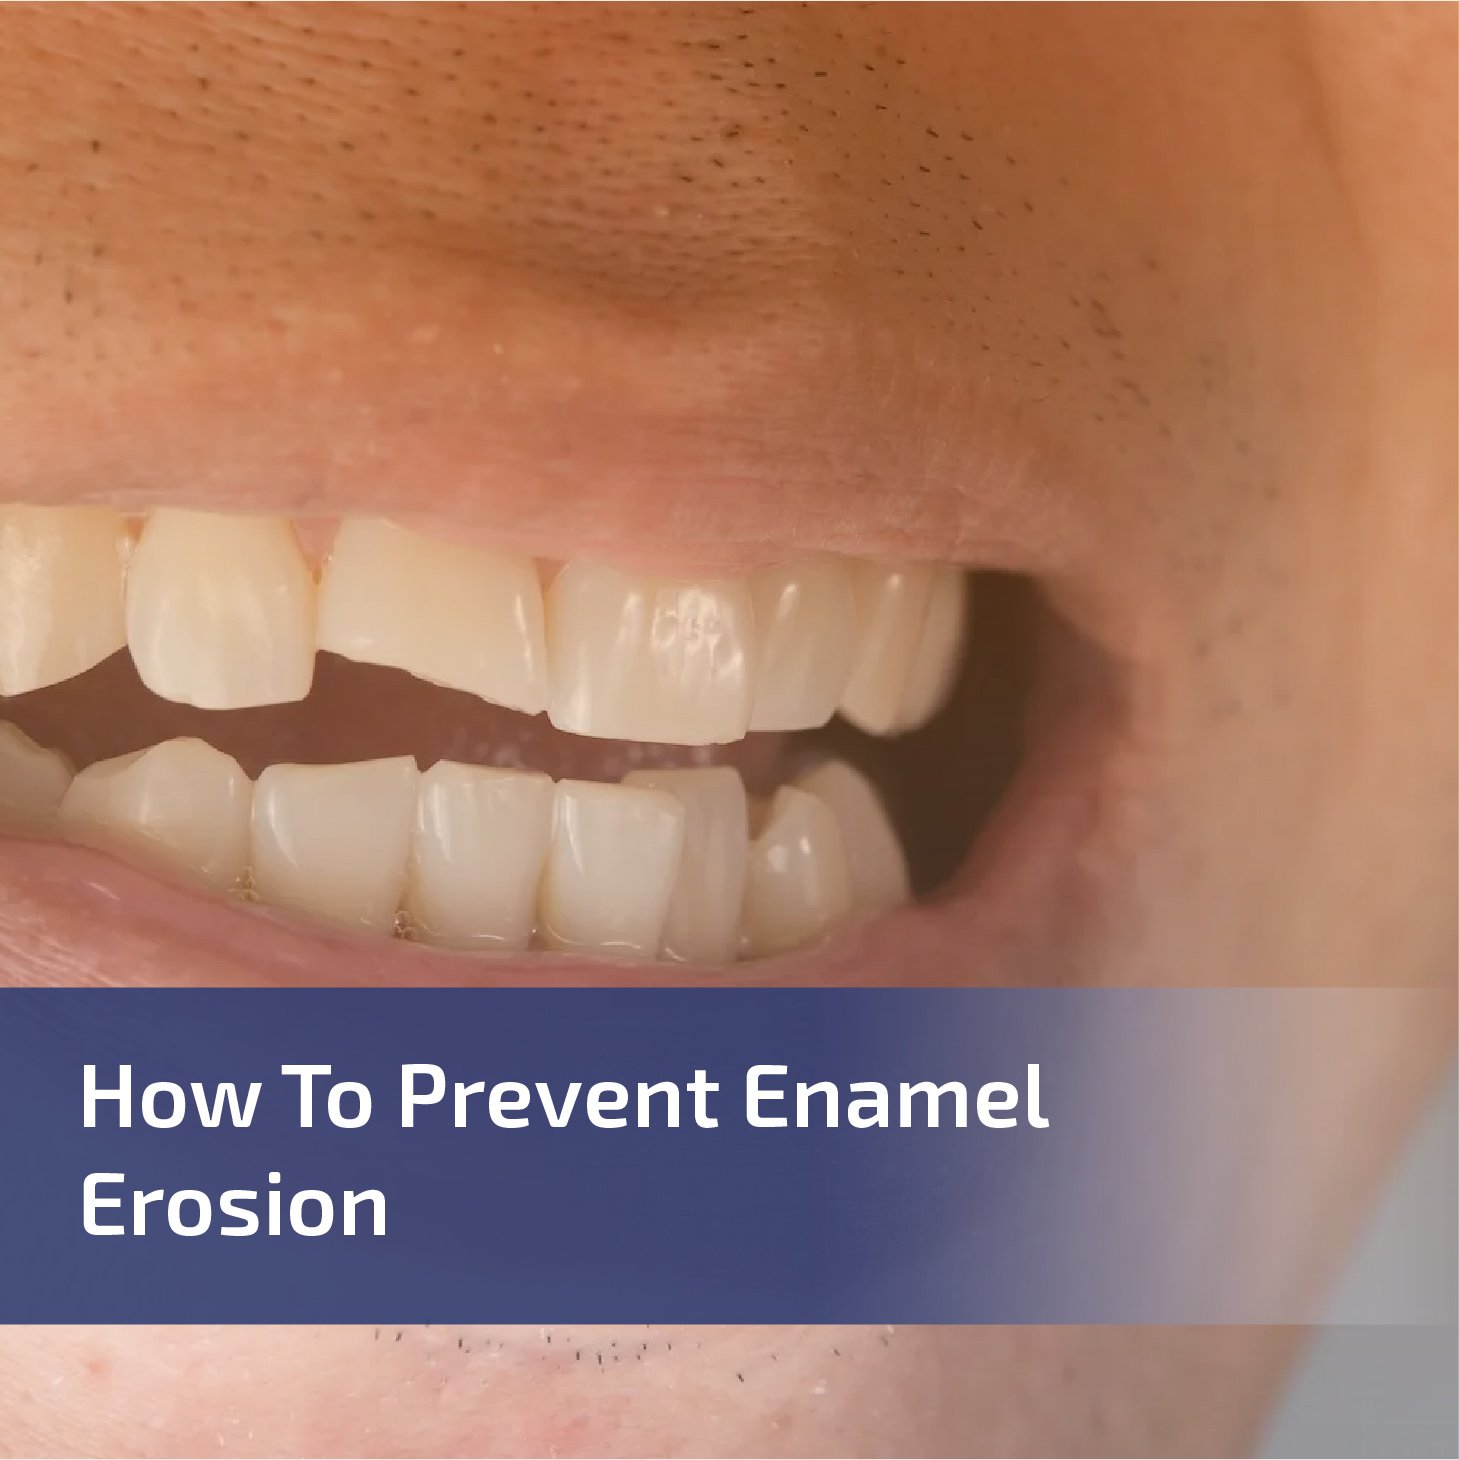 How to Prevent Enamel Erosion